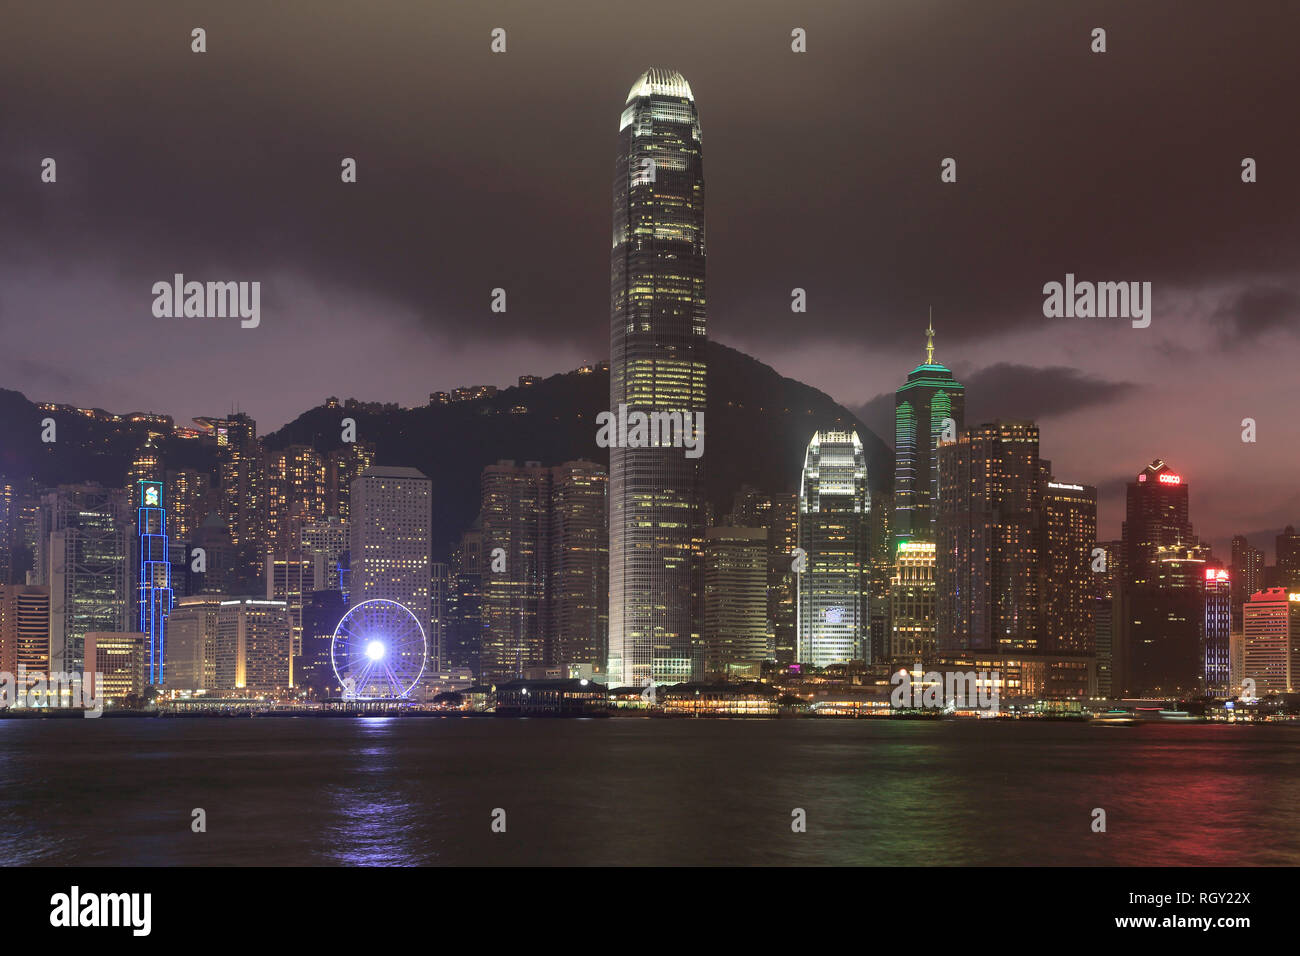 Centre financier international (SFI), Chinese Junk, Skyline, Victoria Harbour dans la nuit, l'île de Hong Kong, Hong Kong, Chine Asie Banque D'Images